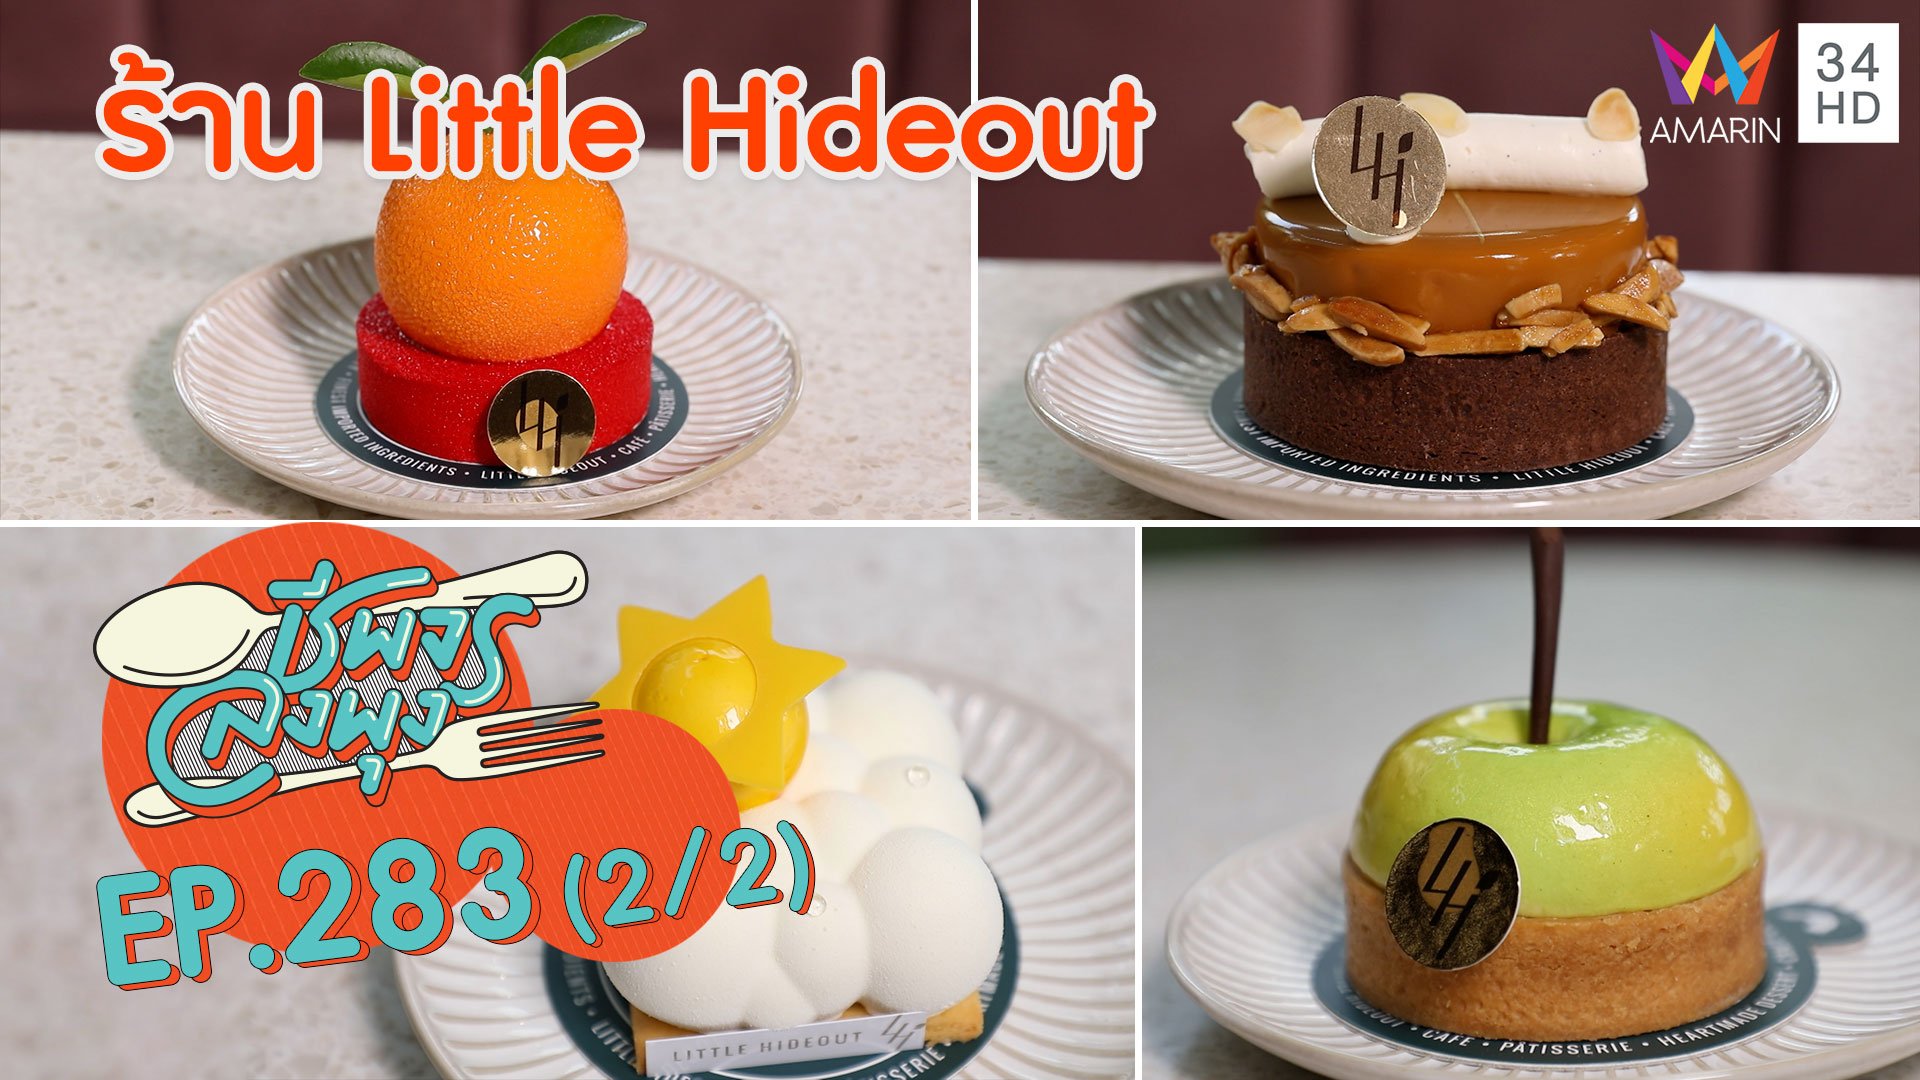 เค้กสไตล์ฝรั่งเศส อร่อยนุ่มละมุนลิ้น @ ร้าน Little Hideout | ชีพจรลงพุง | 7 มี.ค. 64 (2/2) | AMARIN TVHD34